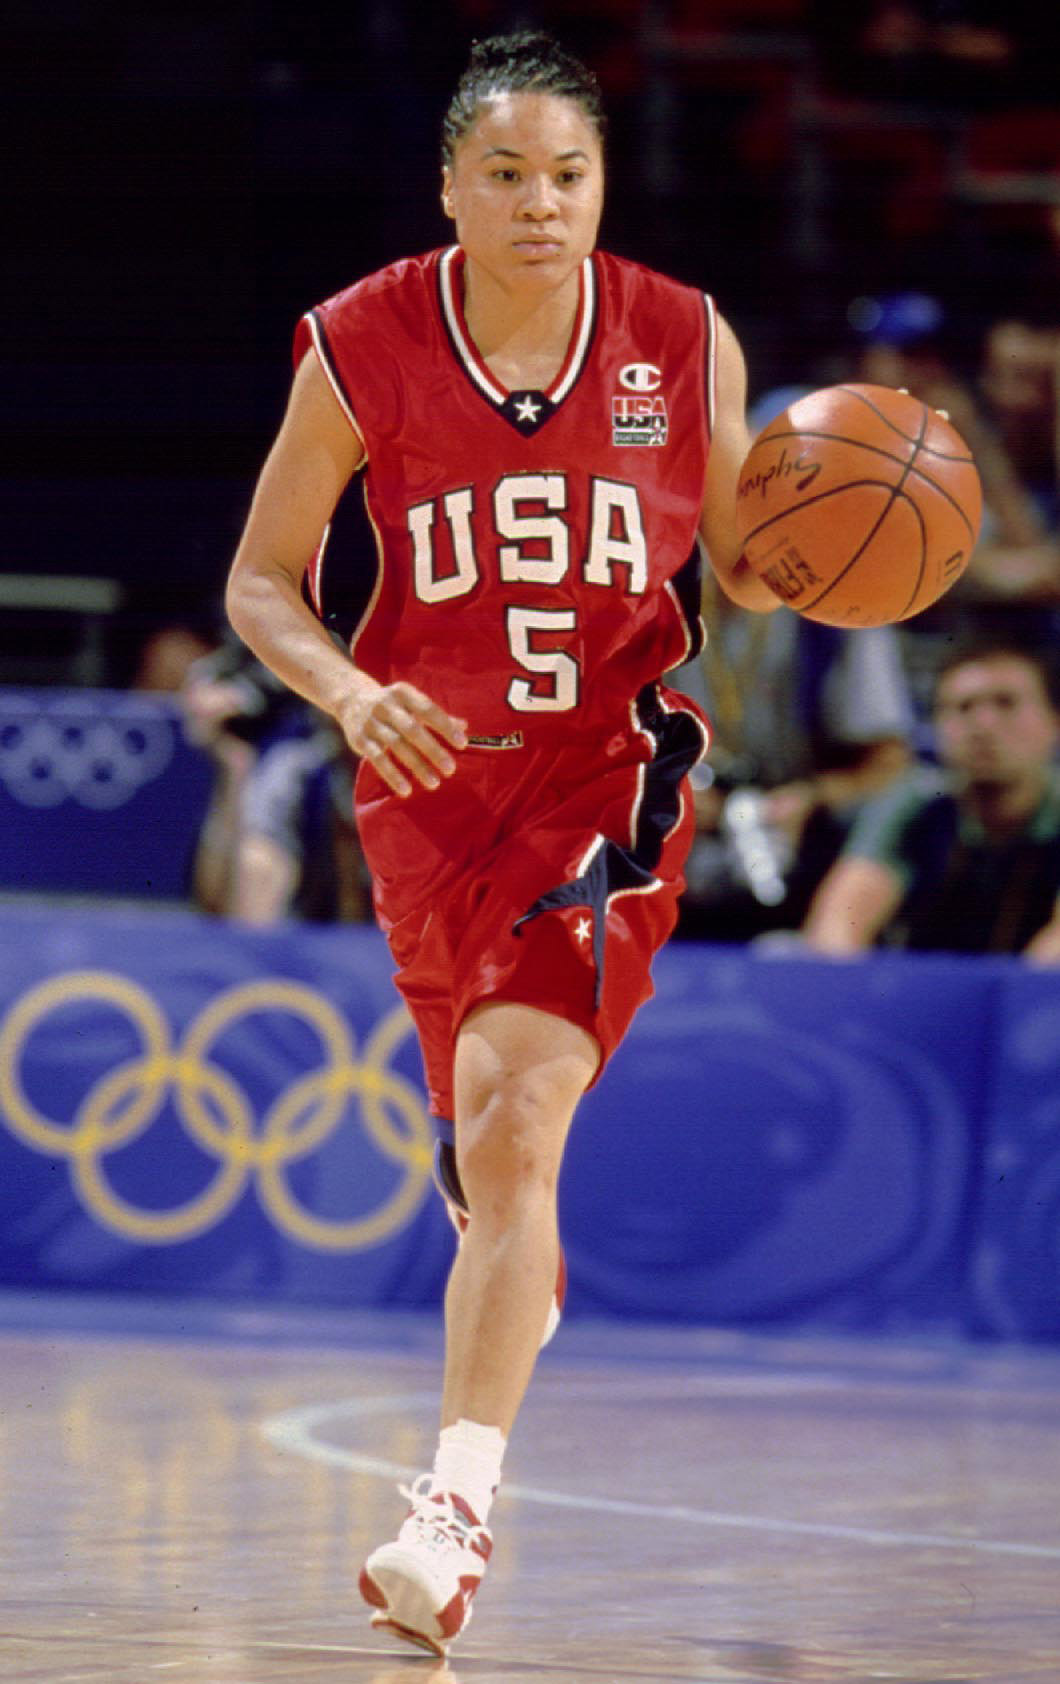 Staley to Lead 2014 USA Basketball Women's U18 National Team